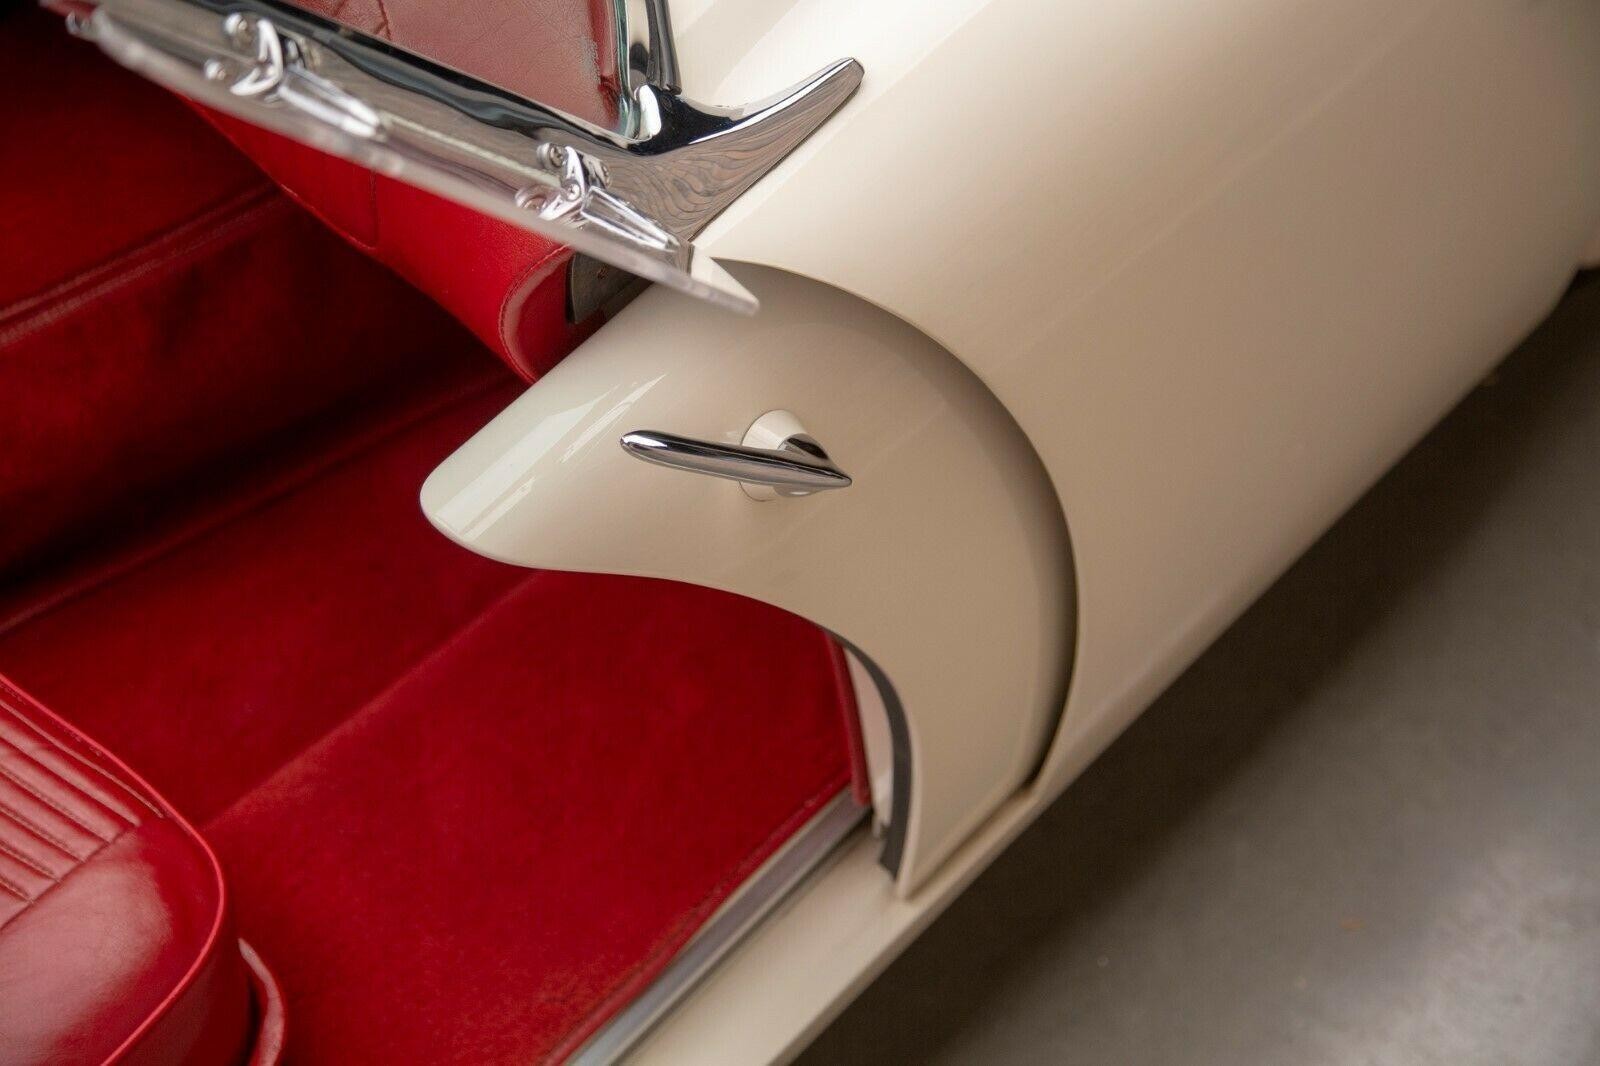 Уникальный американский спортивный автомобиль Kaiser Darrin 1950-х годов